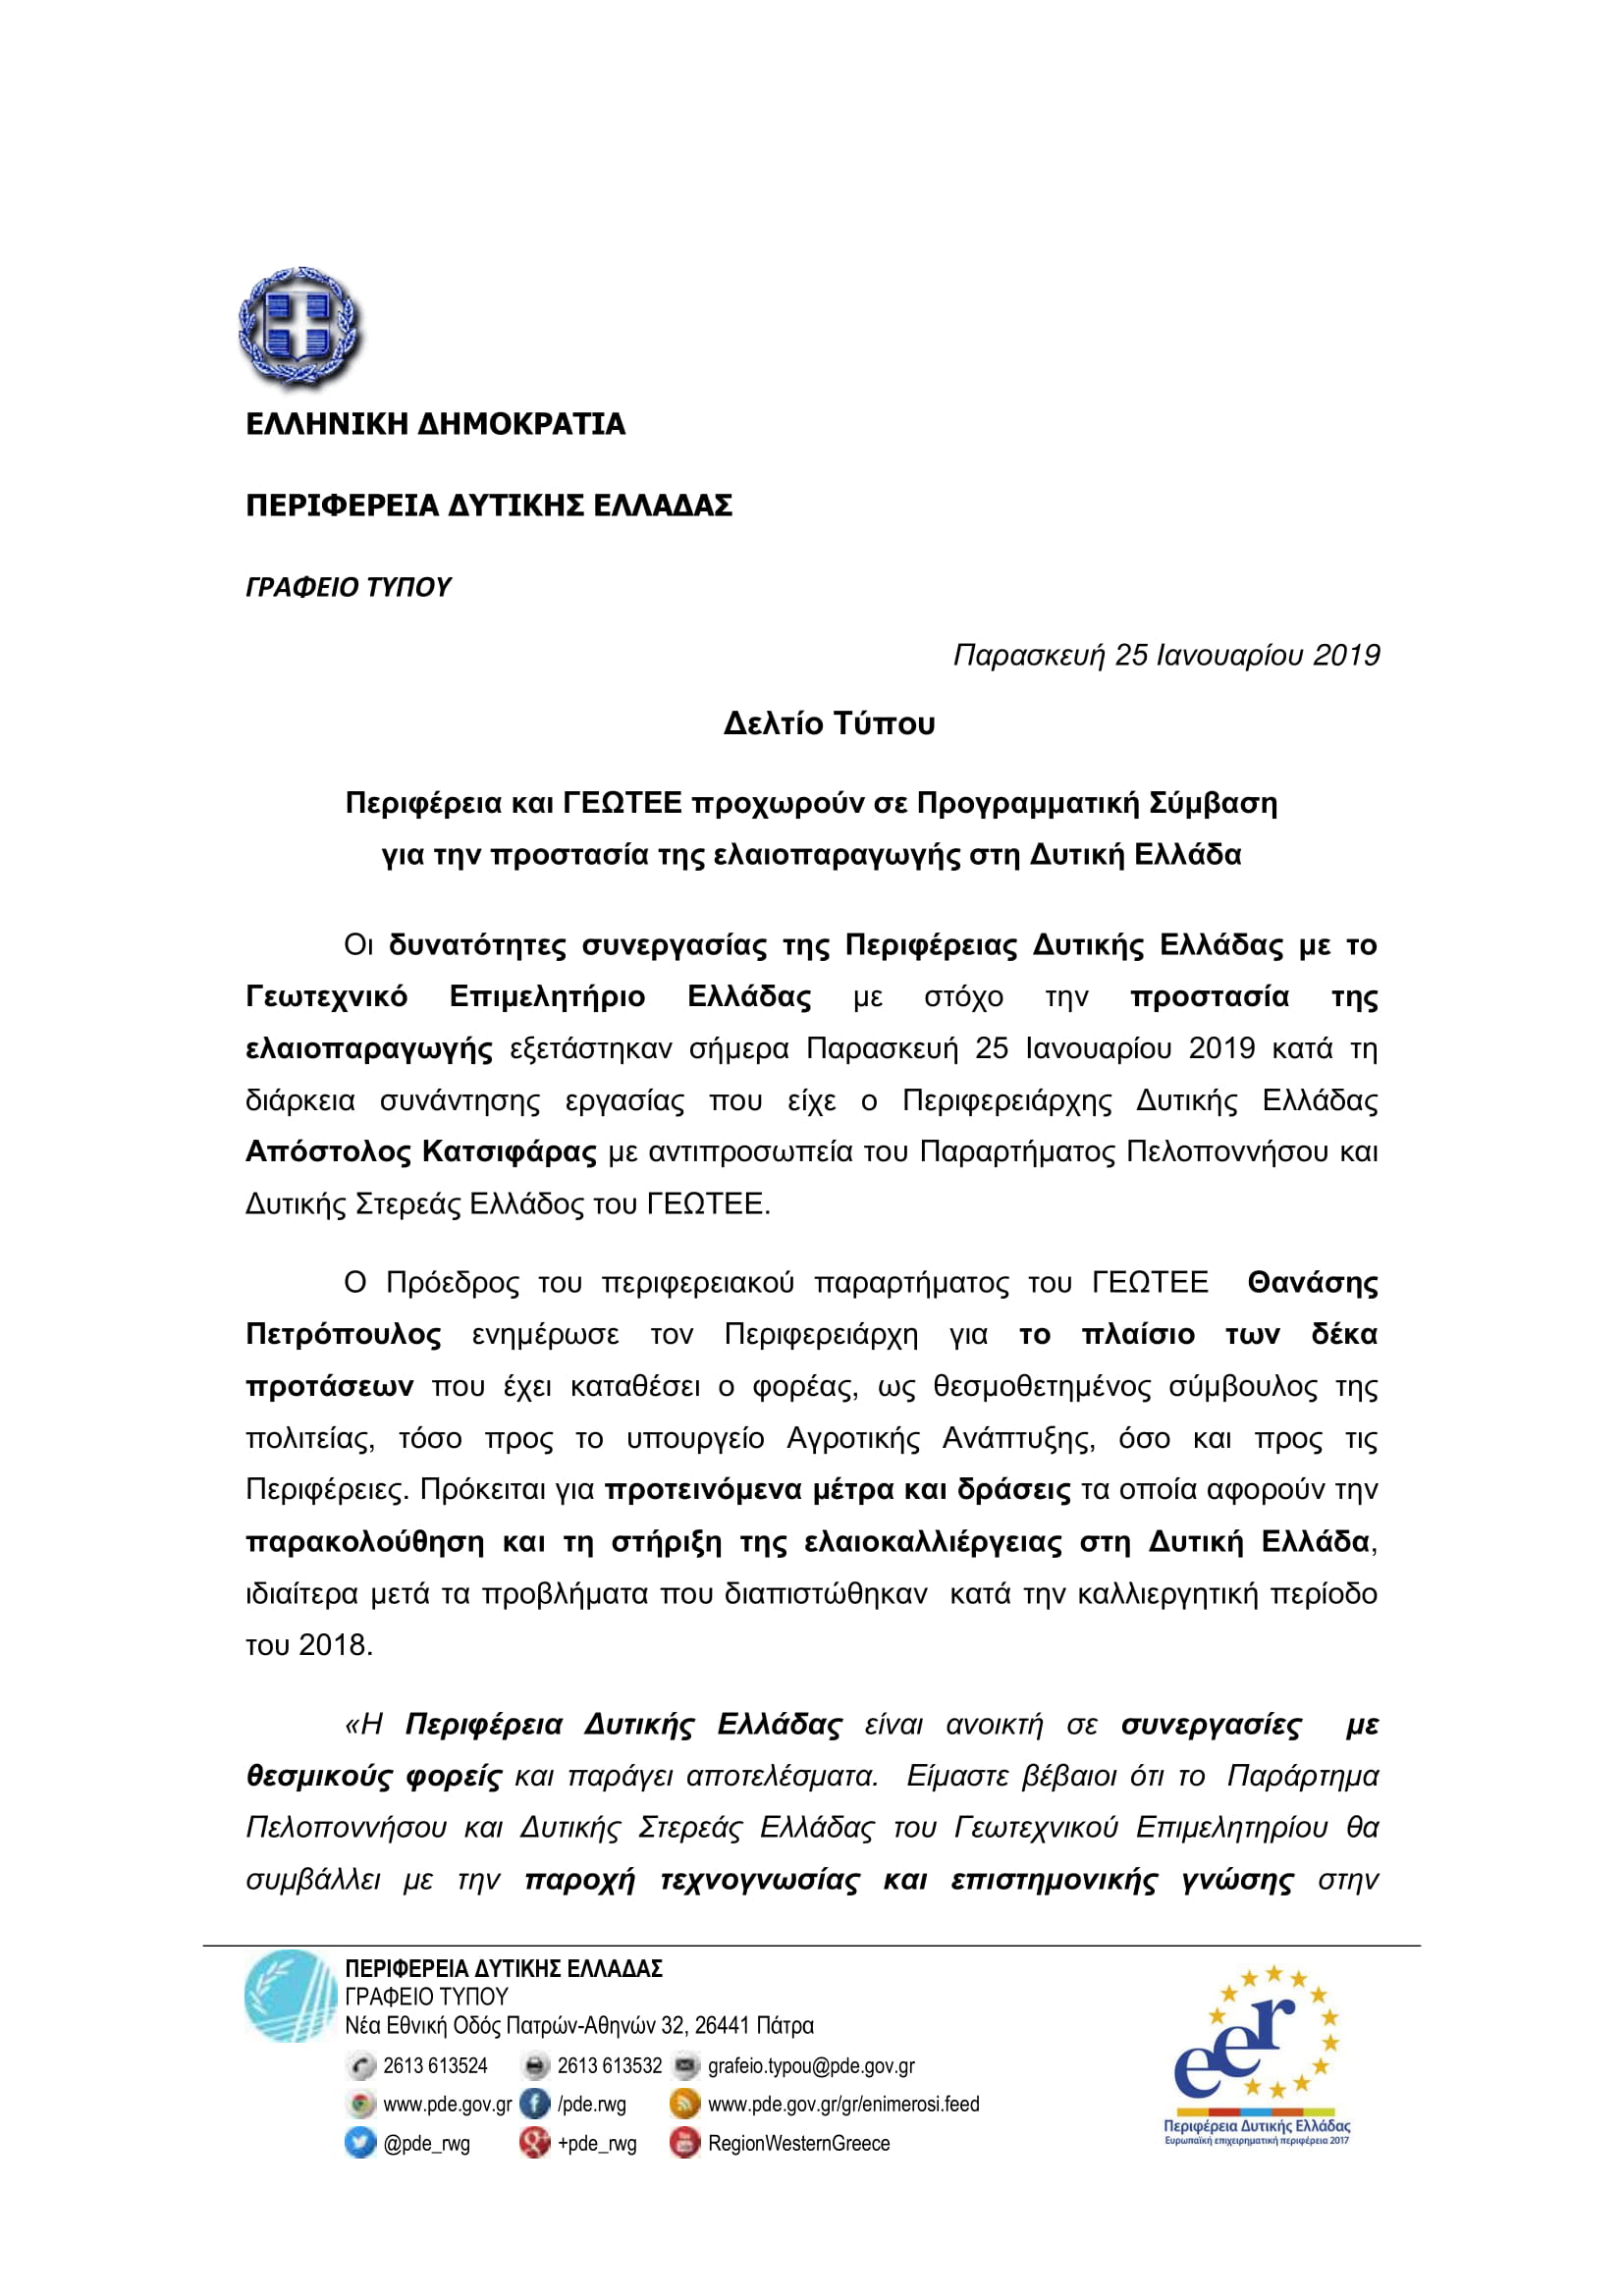 Δελτίο Τύπου Συνεργασίας Περιφέρειας Δ.Ε.- ΓΕΩΤ.Ε.Ε. για την προστασία της ελαιοπαραγωγής (25-01-2019)